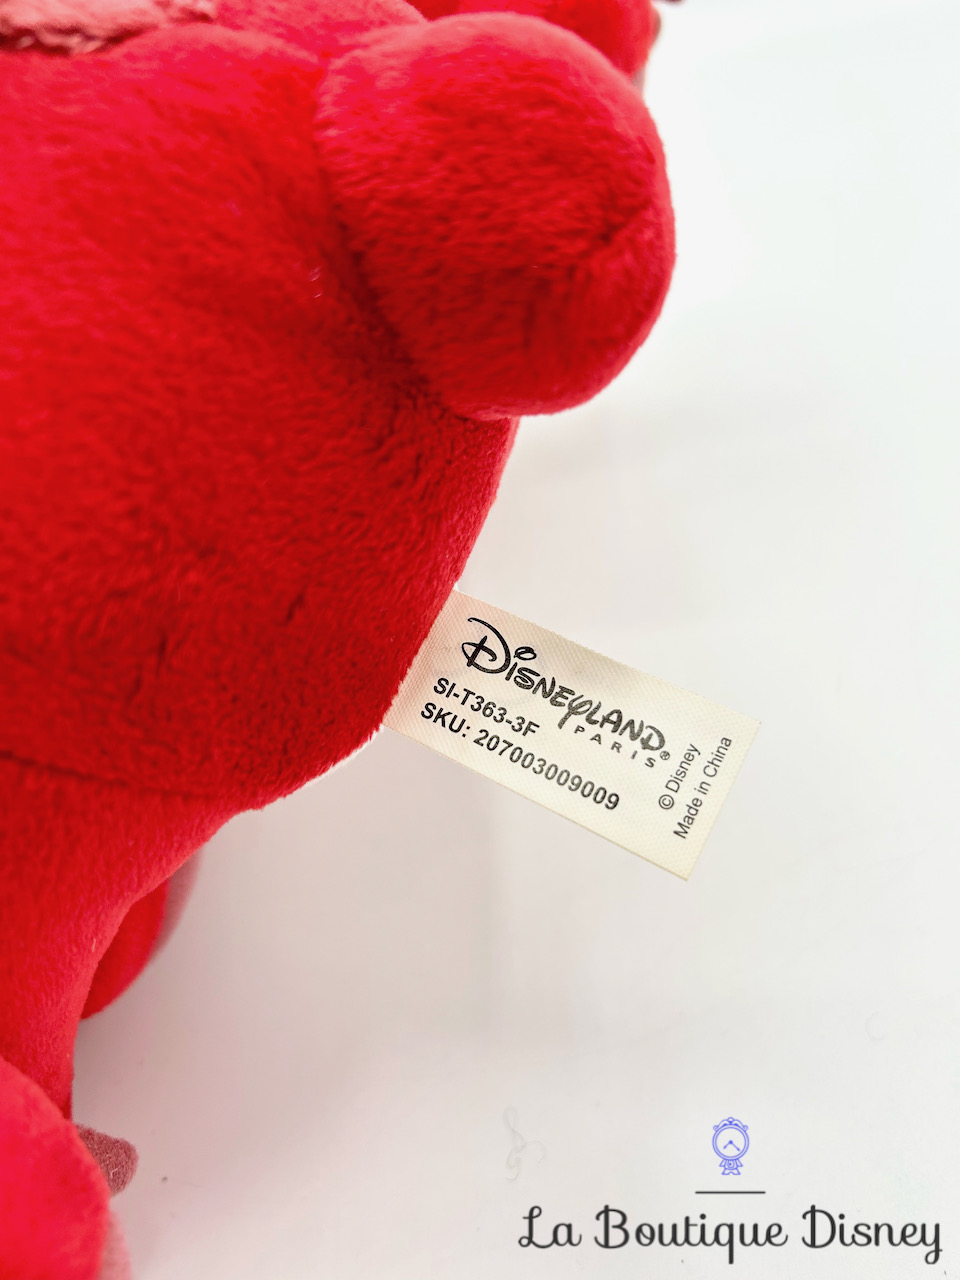 Disney Leroy Stitch Peluche dans sa couverture rouge 25 cm